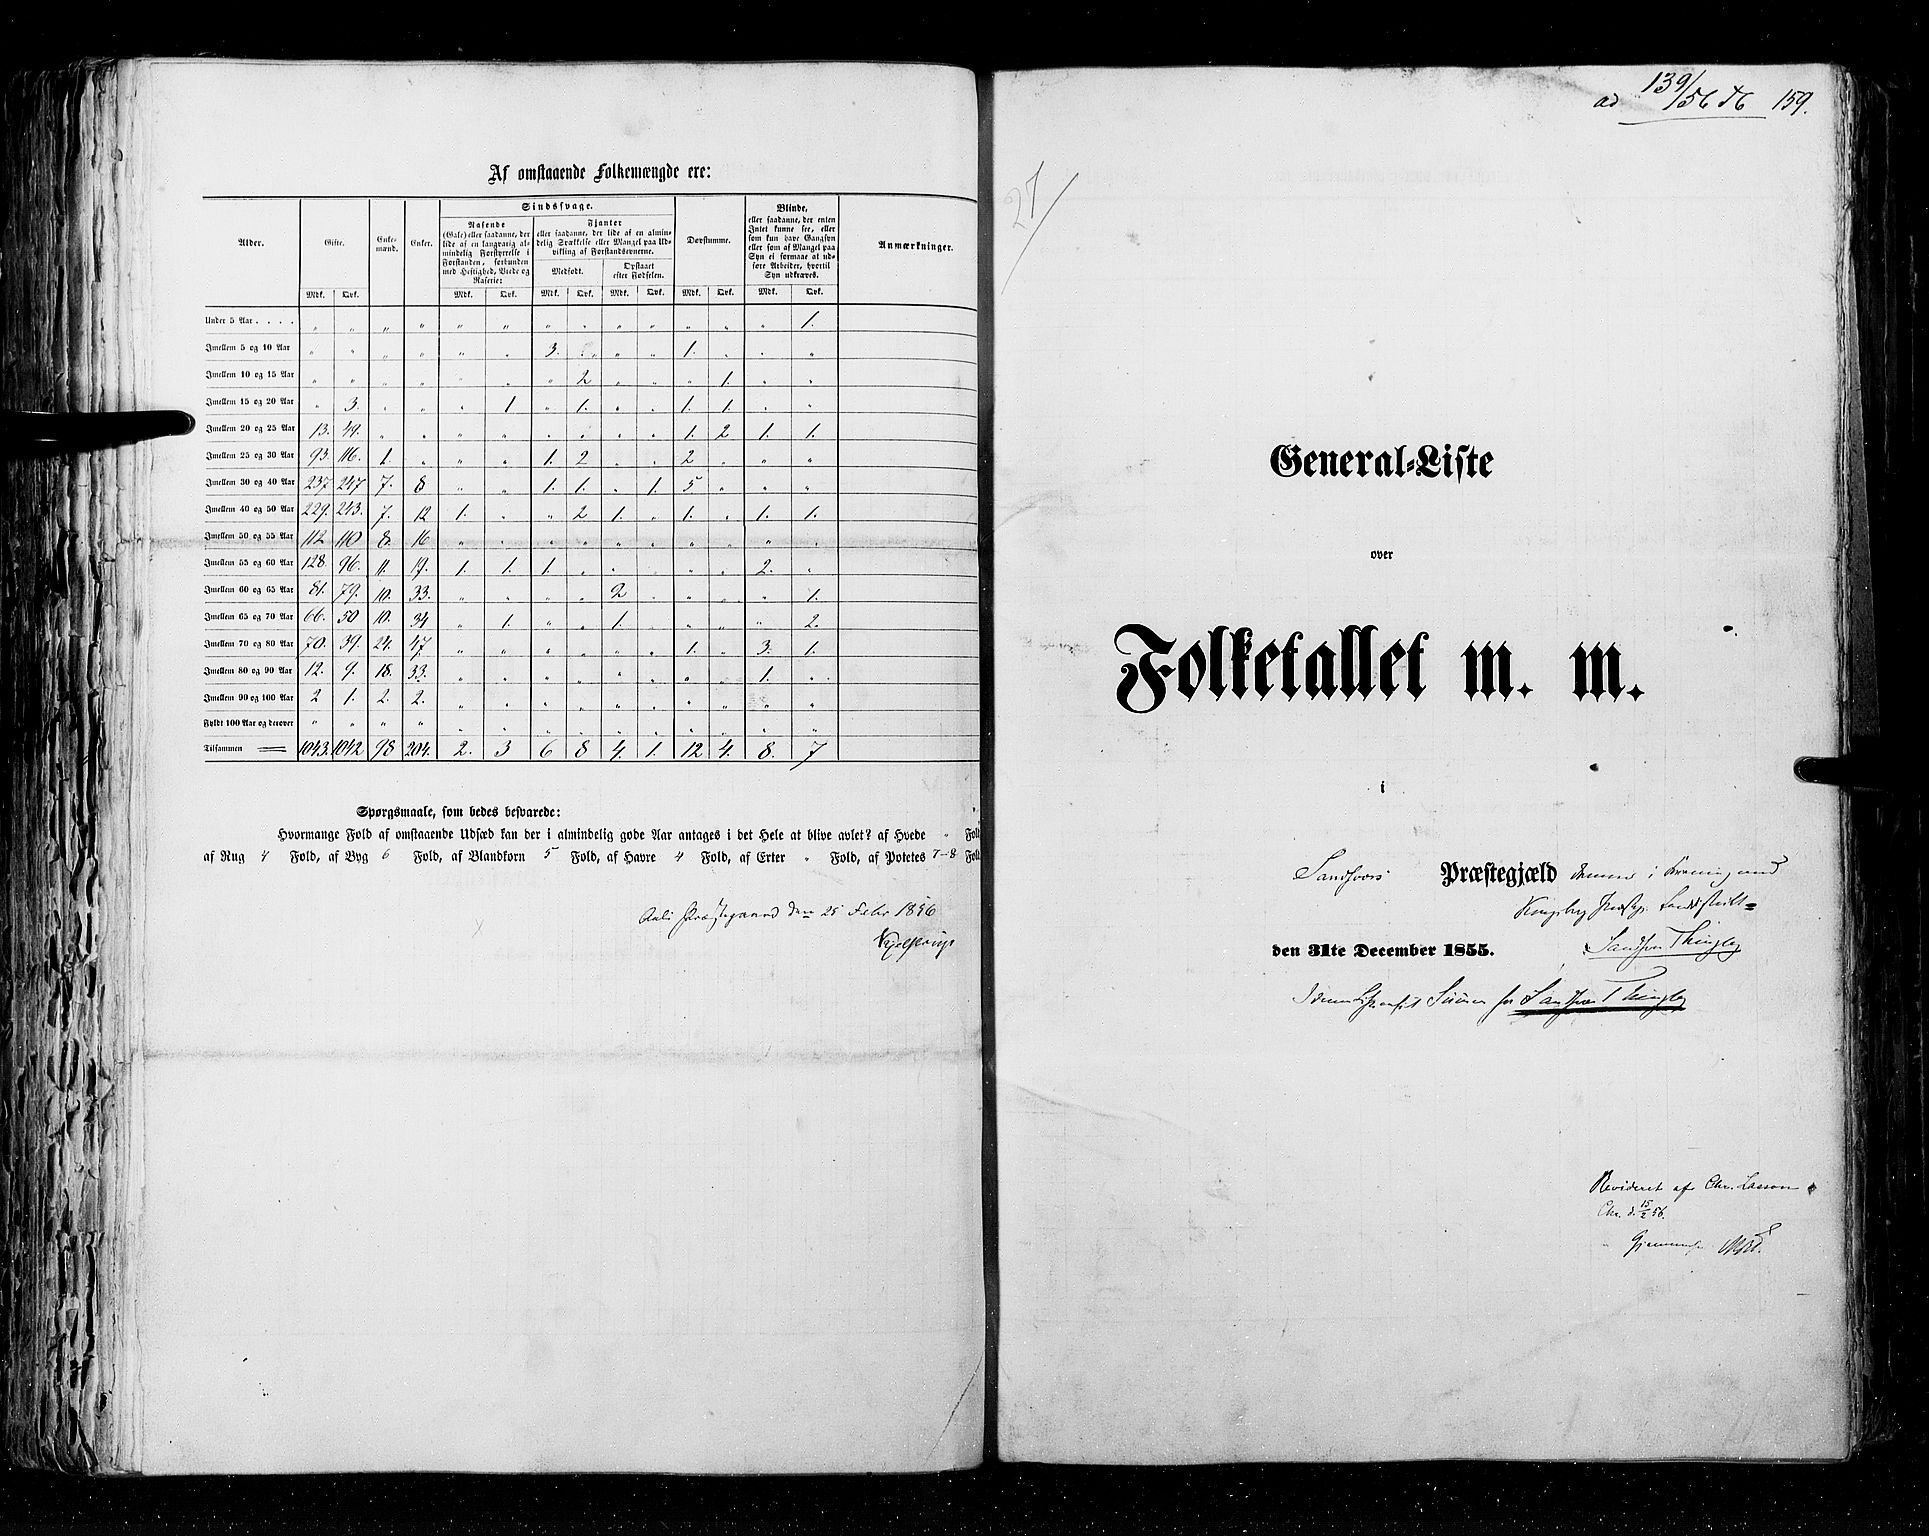 RA, Census 1855, vol. 2: Kristians amt, Buskerud amt og Jarlsberg og Larvik amt, 1855, p. 159